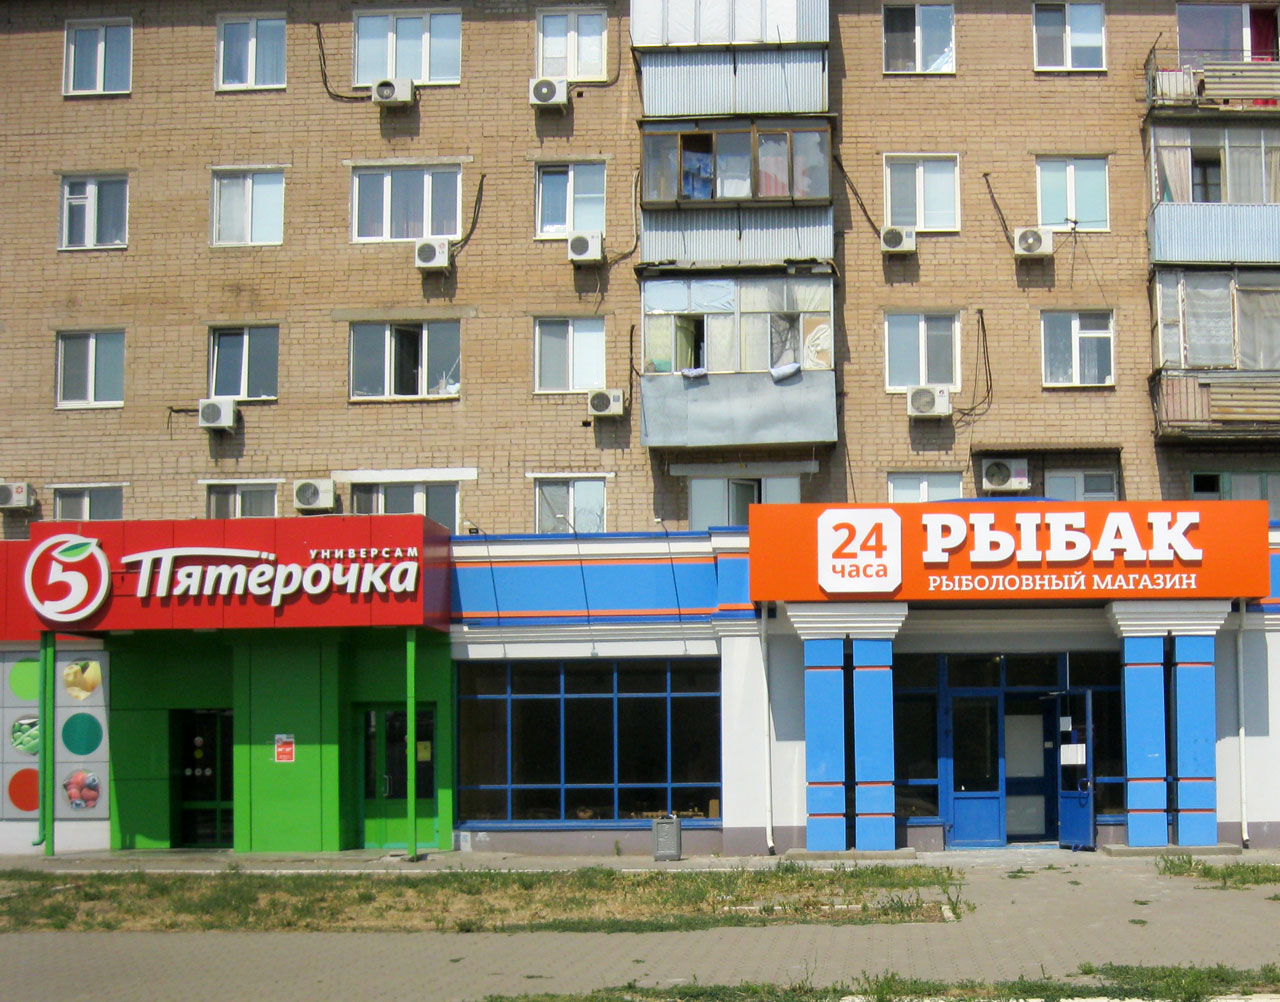 Рыболовный магазин в Оренбурге рядом с Пятёрочкой на Шевченко 36